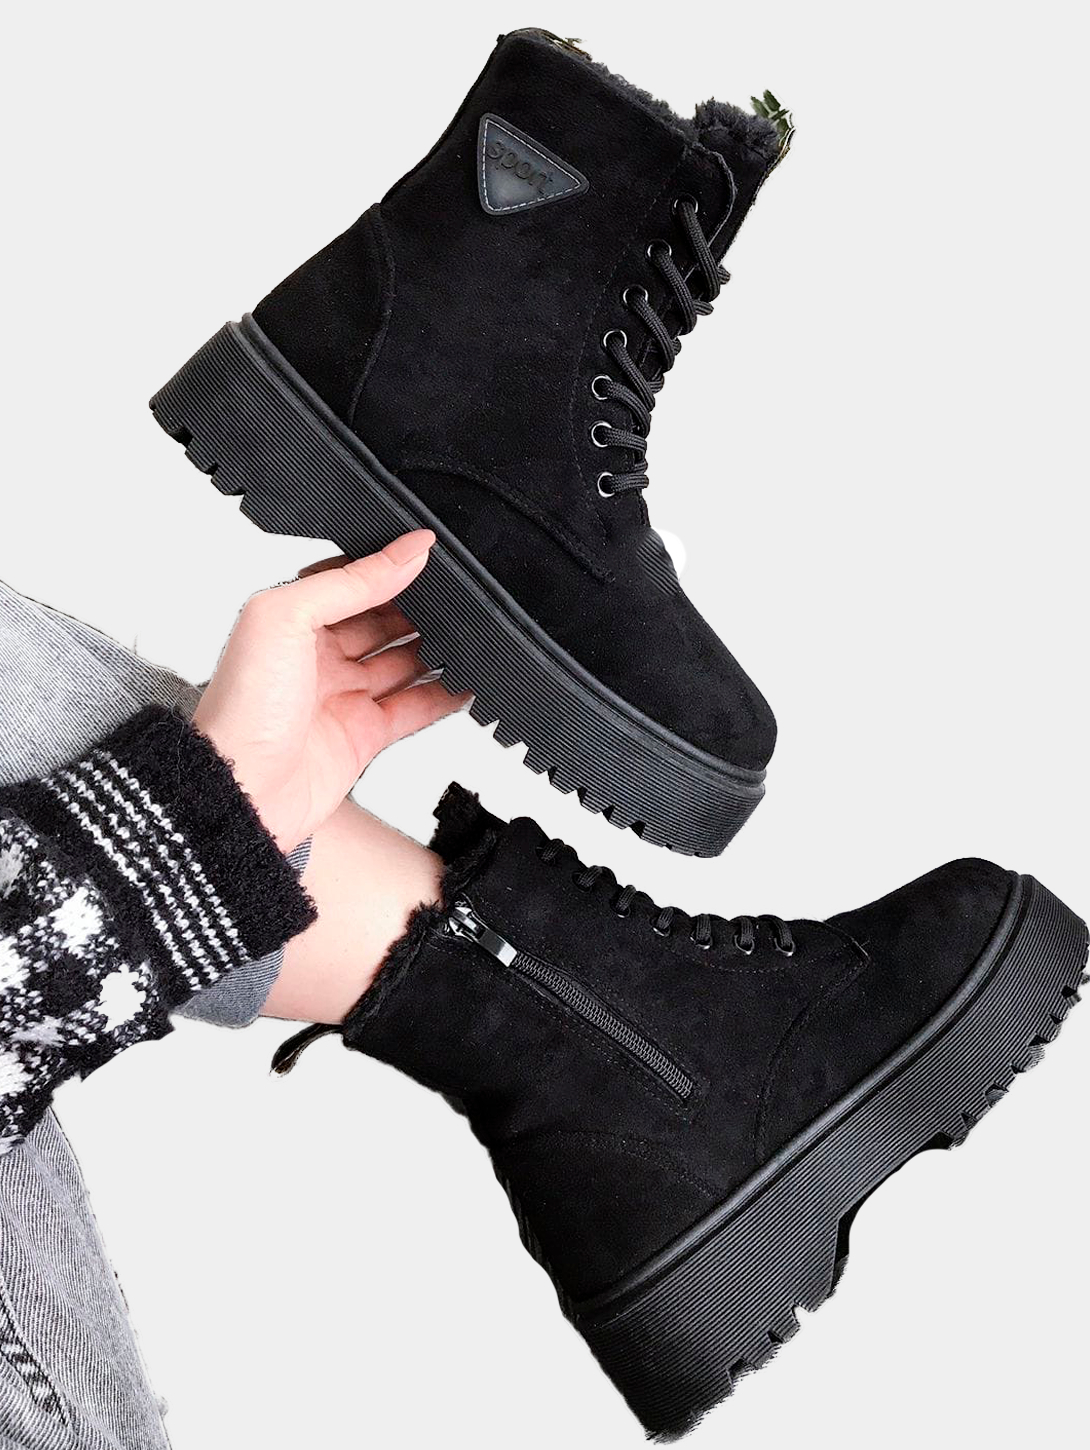 Ботинки женские зимние с натуральным мехом, теплая удобная обувь из замшикупить по цене 1300 ₽ в интернет-магазине KazanExpress